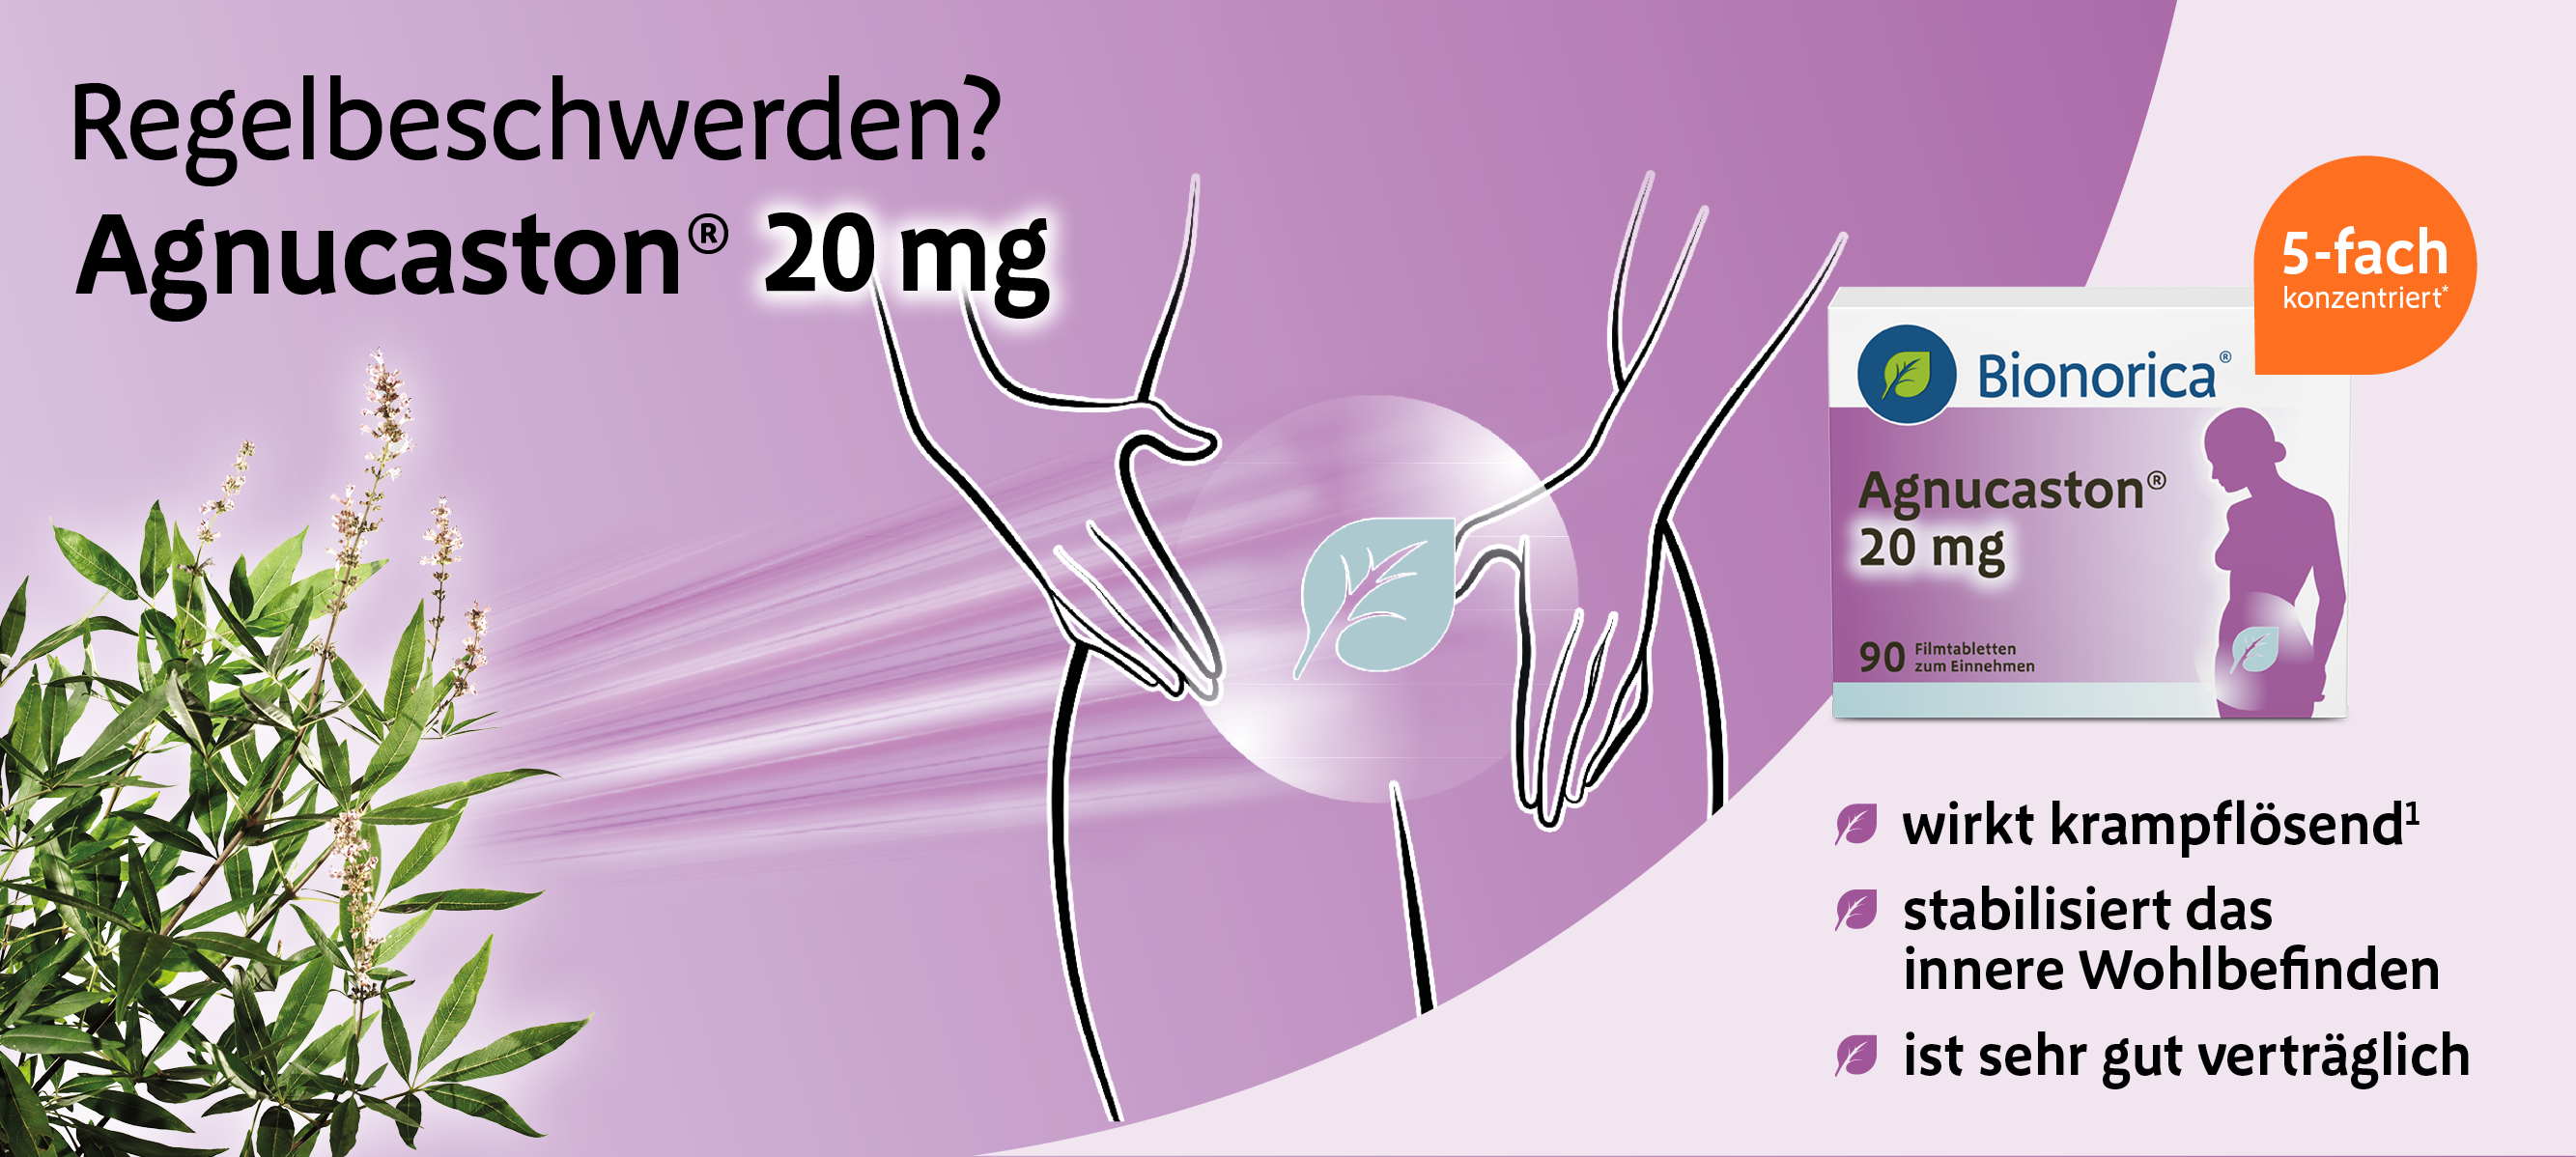 Agnucaston 20 mg Produktheader